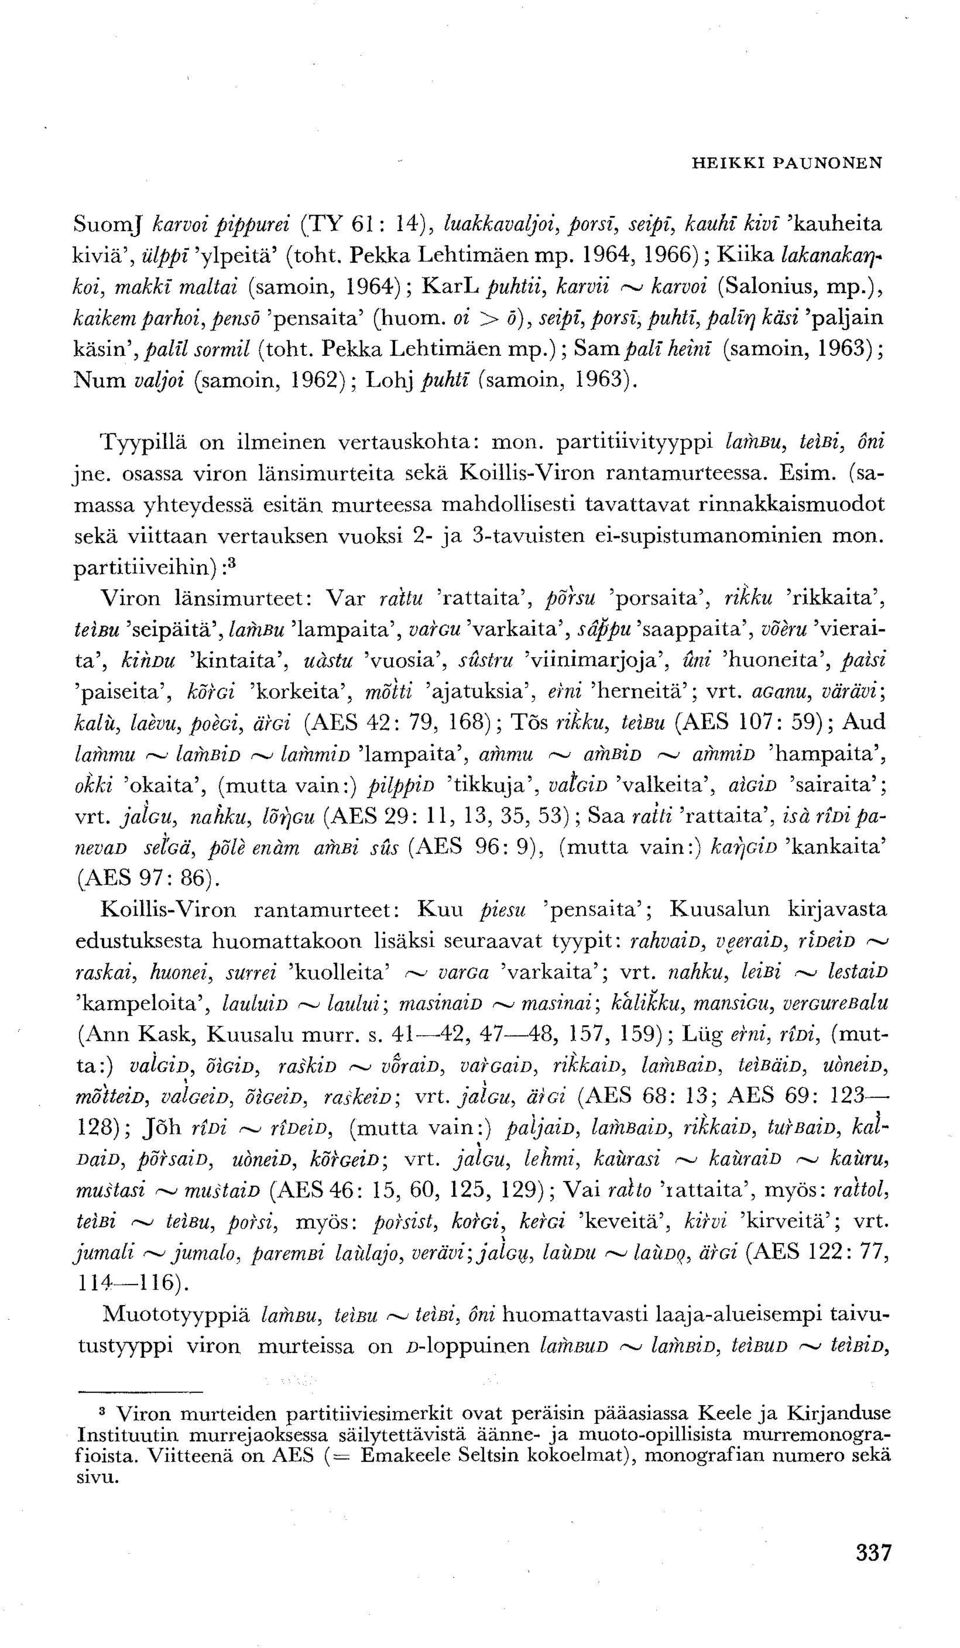 oi > o), seipi, porsi, puhti, palir\ käsi 'paljain käsin', palil sormil (toht. Pekka Lehtimäen mp.); Sampali heini (samoin, 1963); Num valjoi (samoin, 1962); Lohj puhti (samoin, 1963).